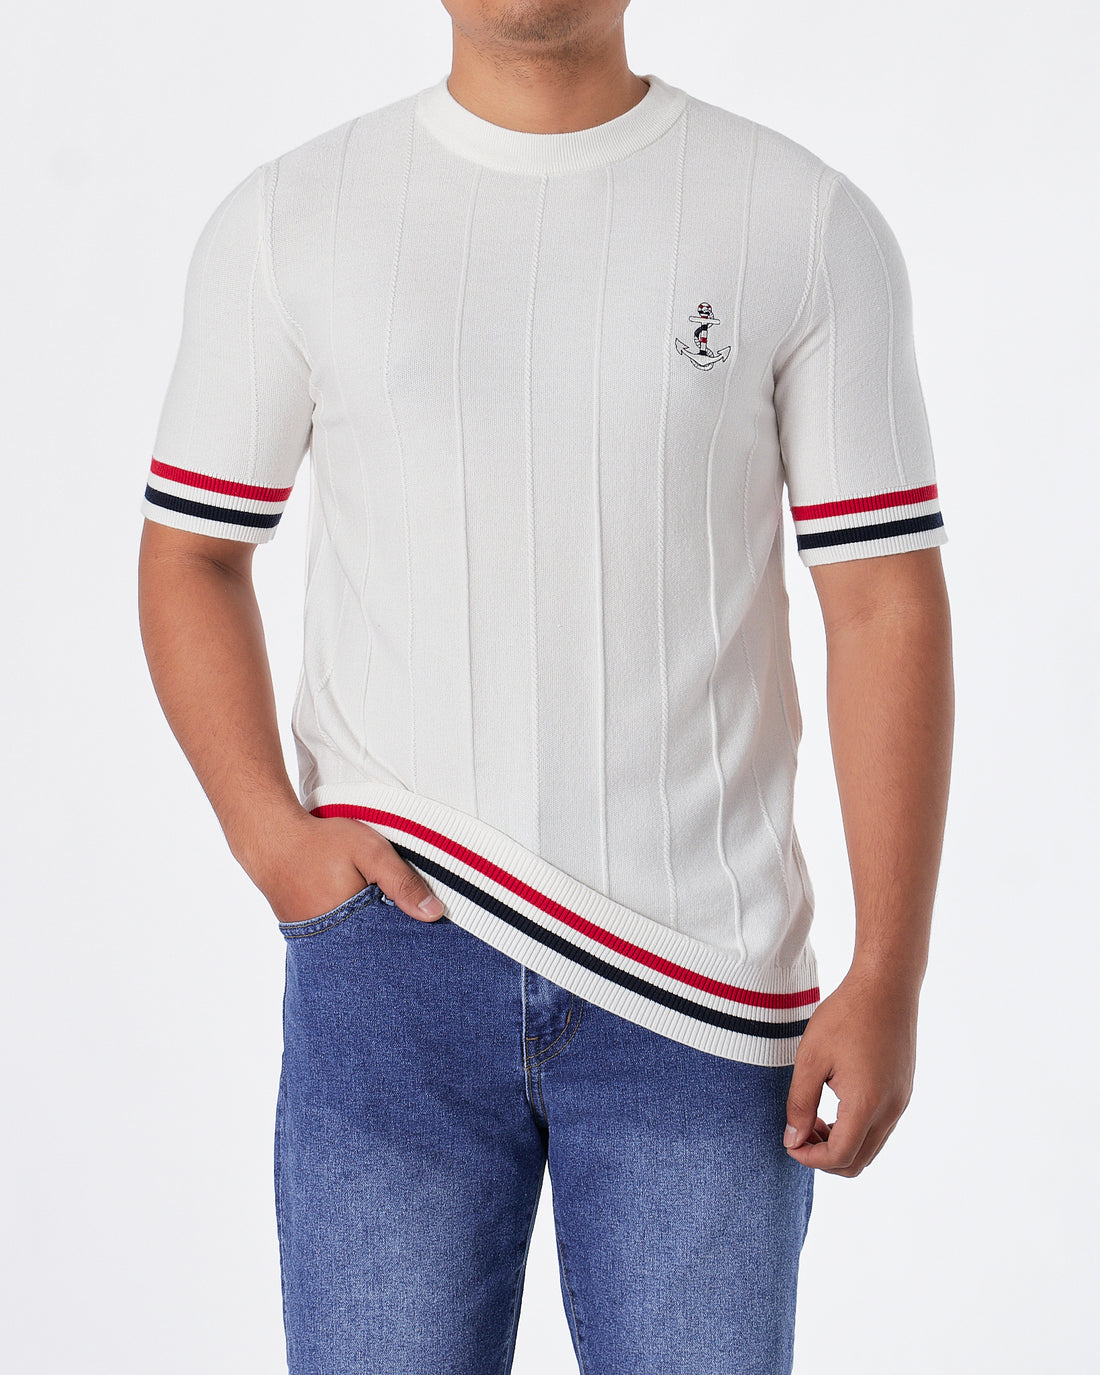 TB Tri-Colour Striped Men White Knit  T-Shirt 59.90